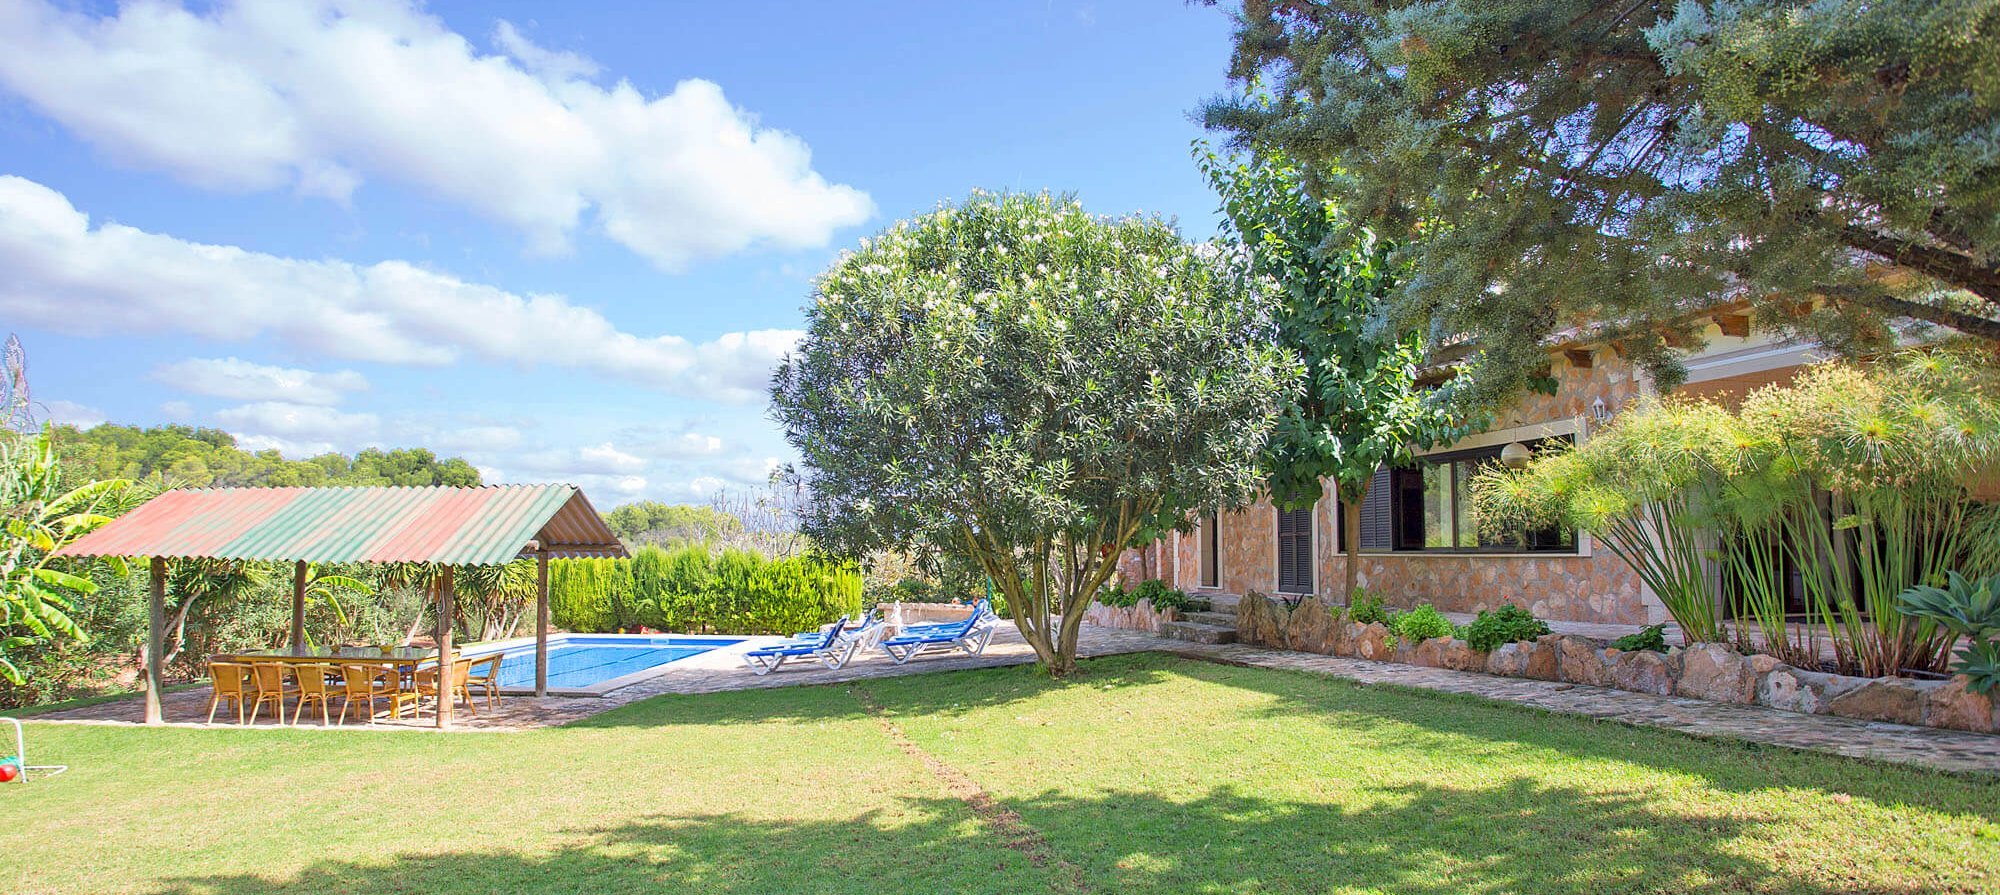 Ferienhaus Mallorca für 10 Personen mit Pool